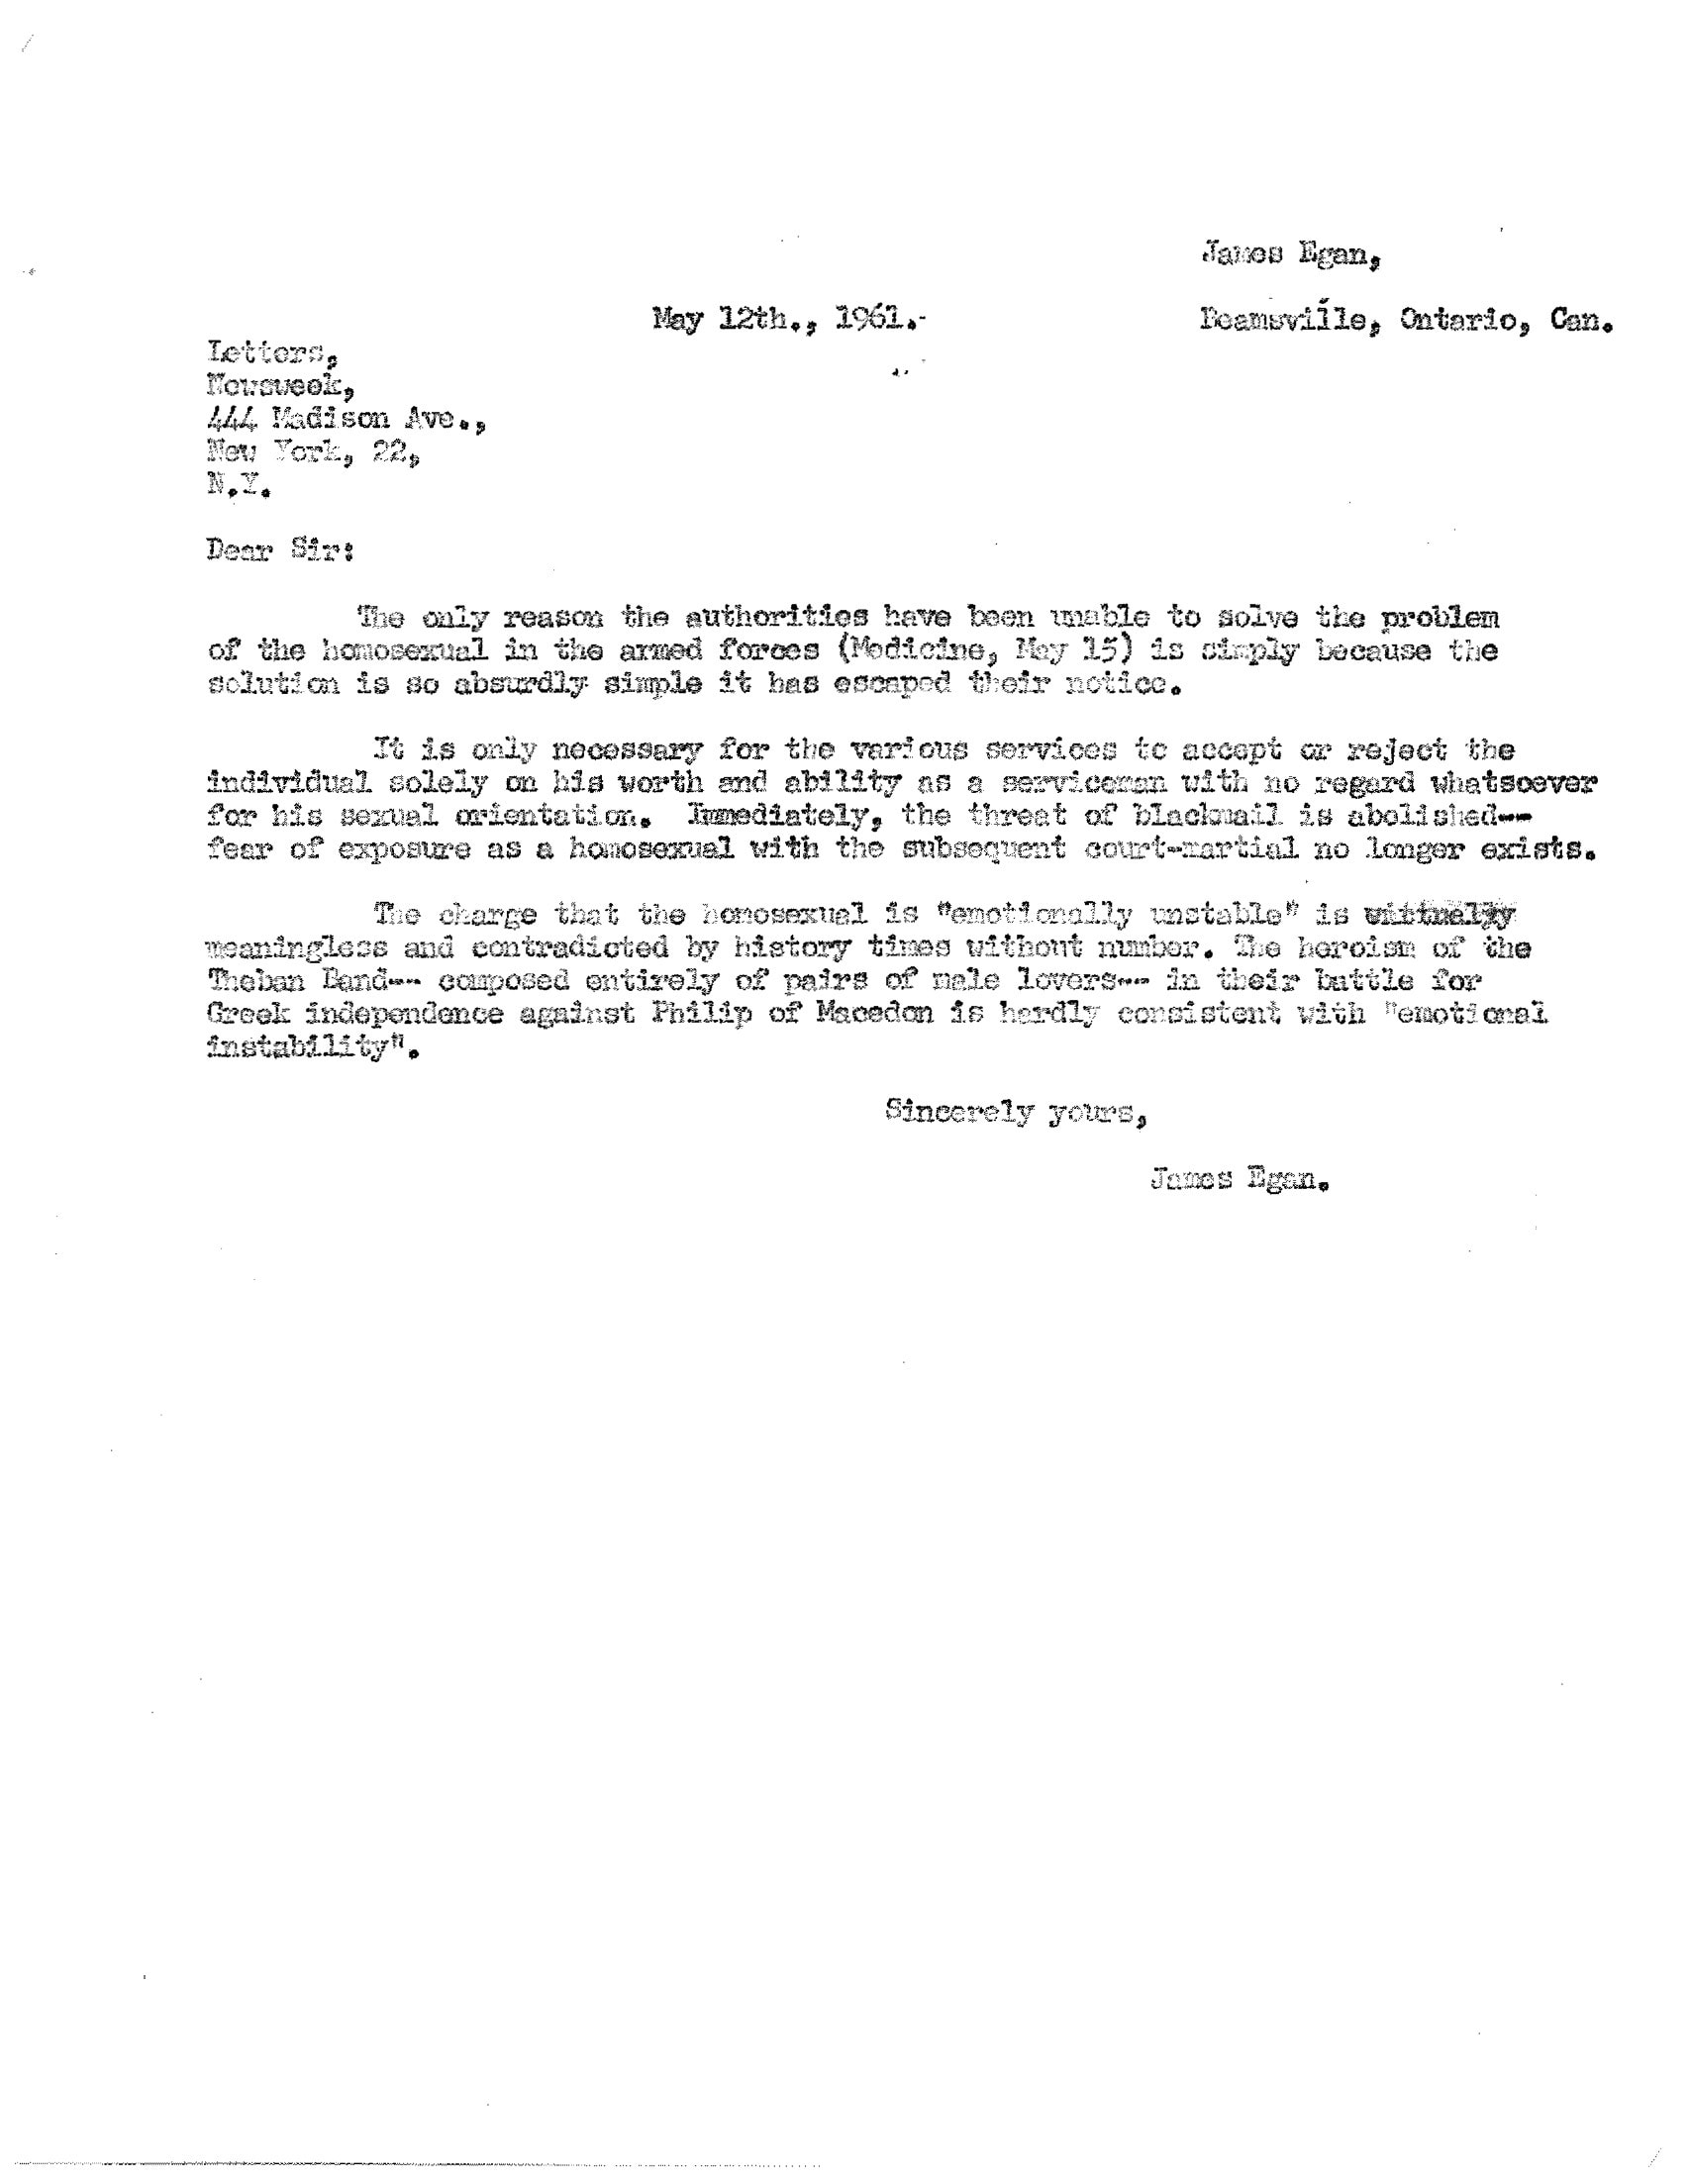 Typewritten letter from James Egan.